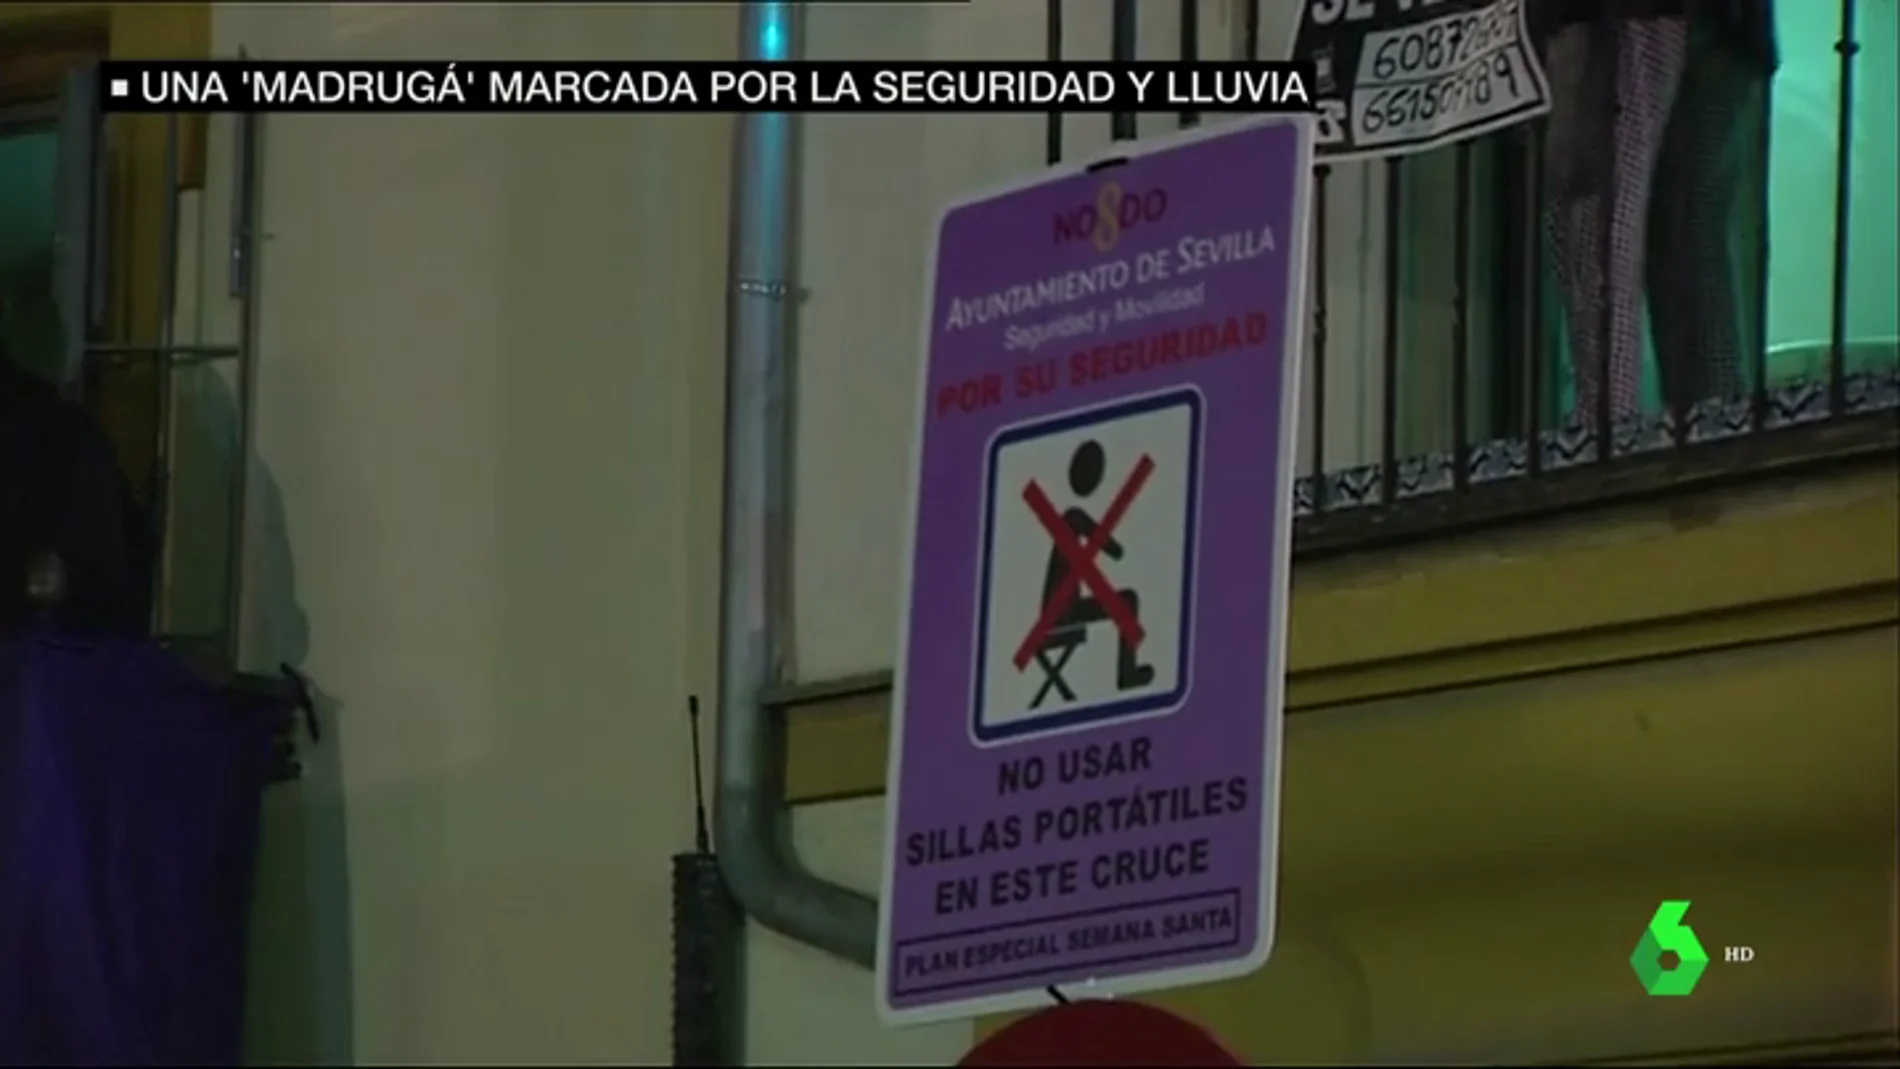 Prohibición de sillas portátiles en Sevilla